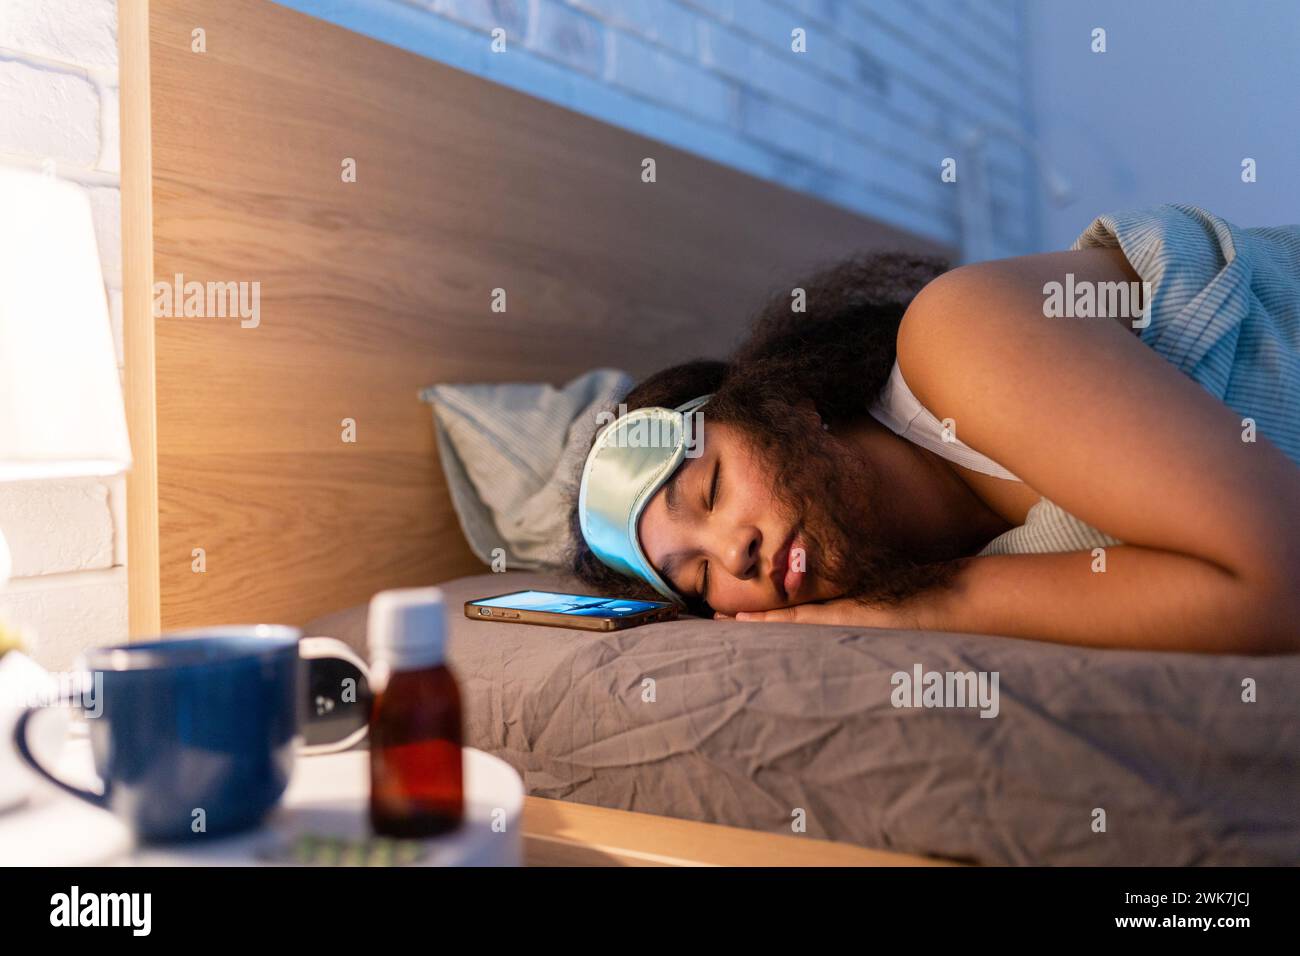 Woman sleeping with sleep mask, using sleeping pills, melatonin. Concept of sleep routine. Insomnia a sleep problems among adults. Stock Photo